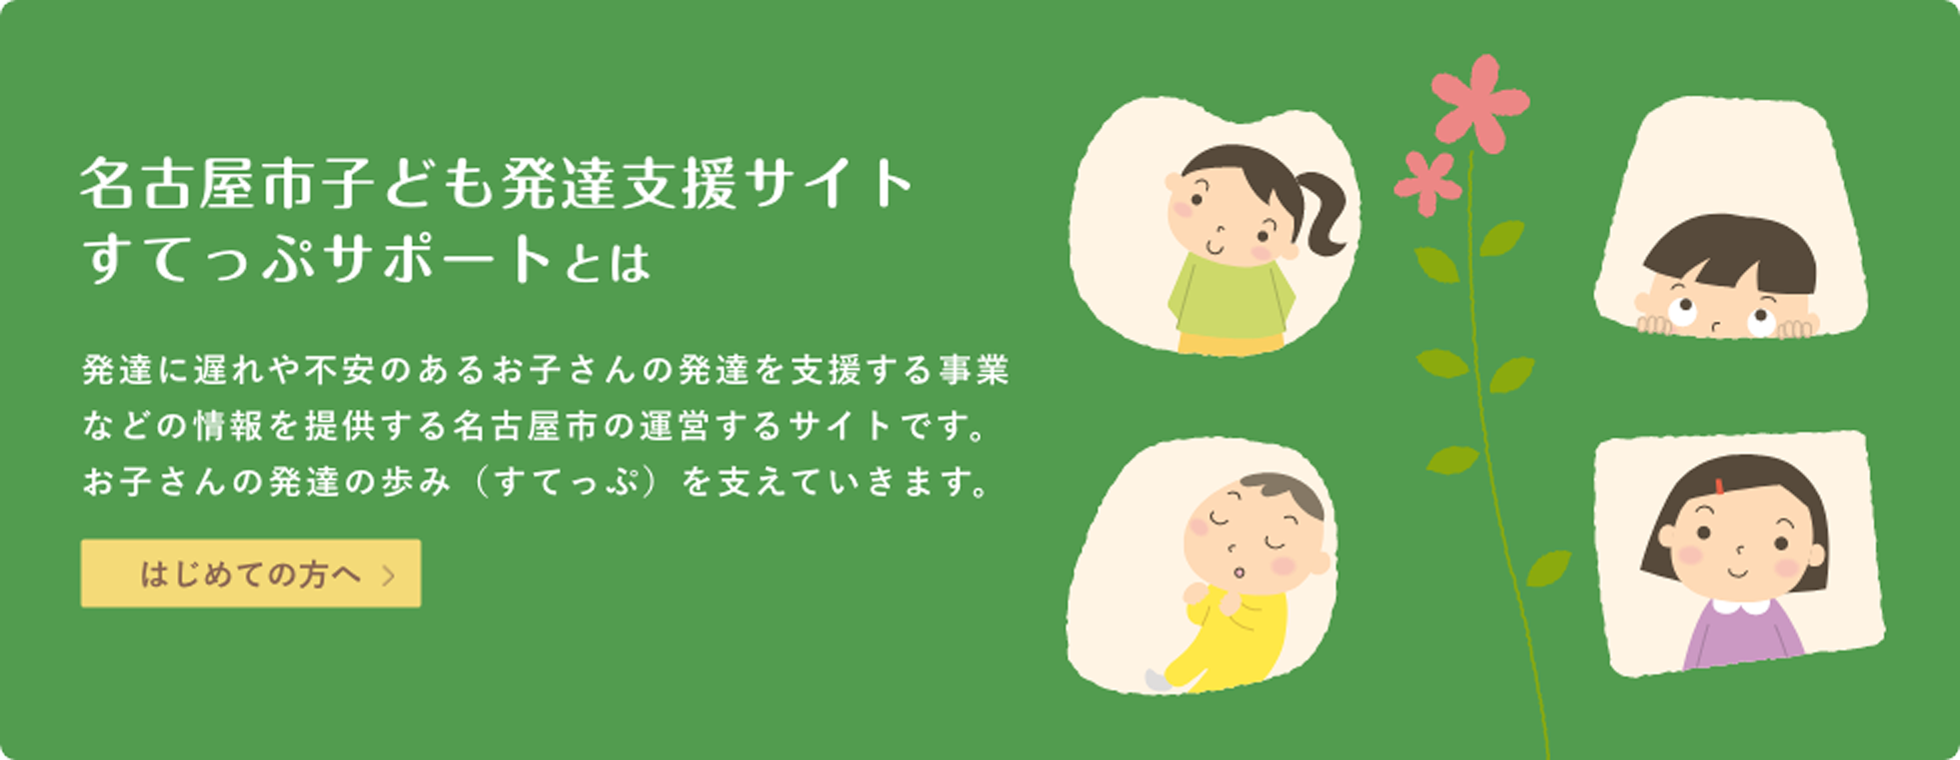 名古屋市子ども発達支援サイトすてっぷサポートとは-発達に遅れや不安のあるお子さんの発達を支援する事業についての情報を提供するサイトです。お子さんの歩み（すてっぷ）を支えていきます。